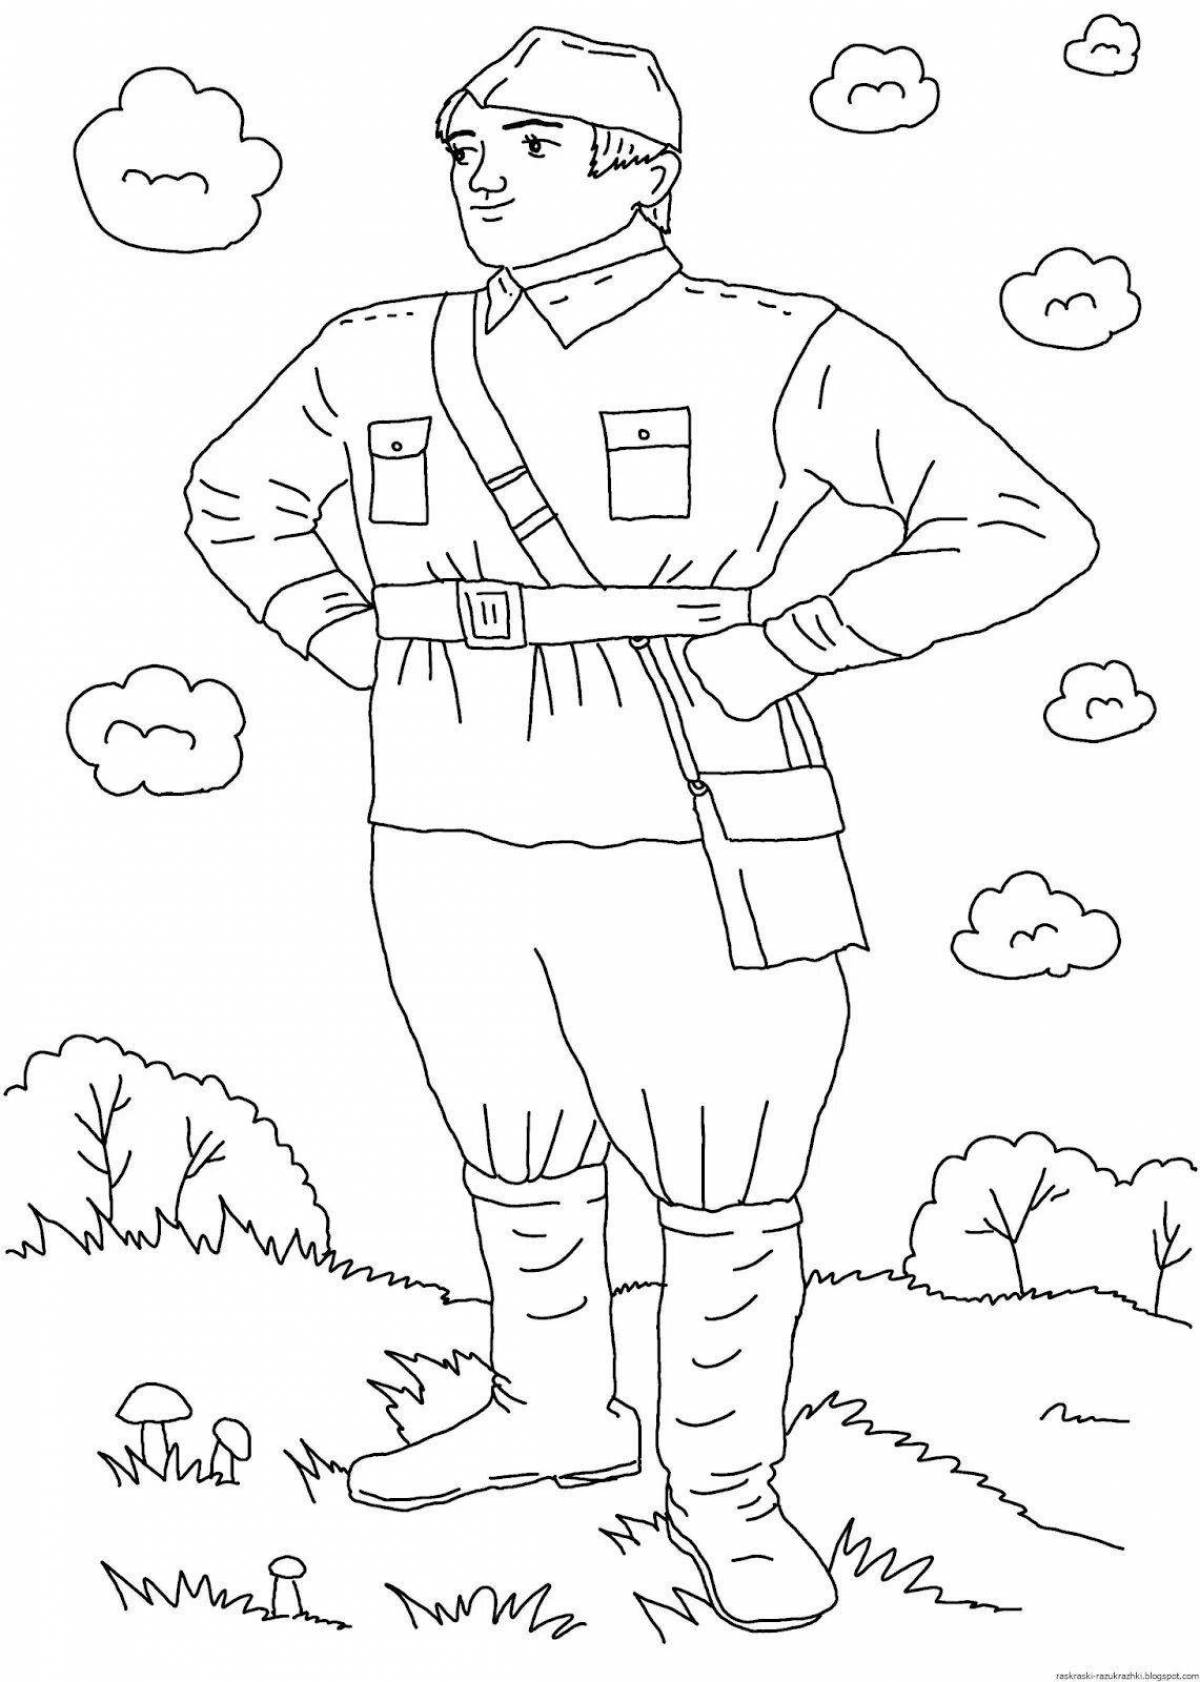 Energetic soldier in postal drawing